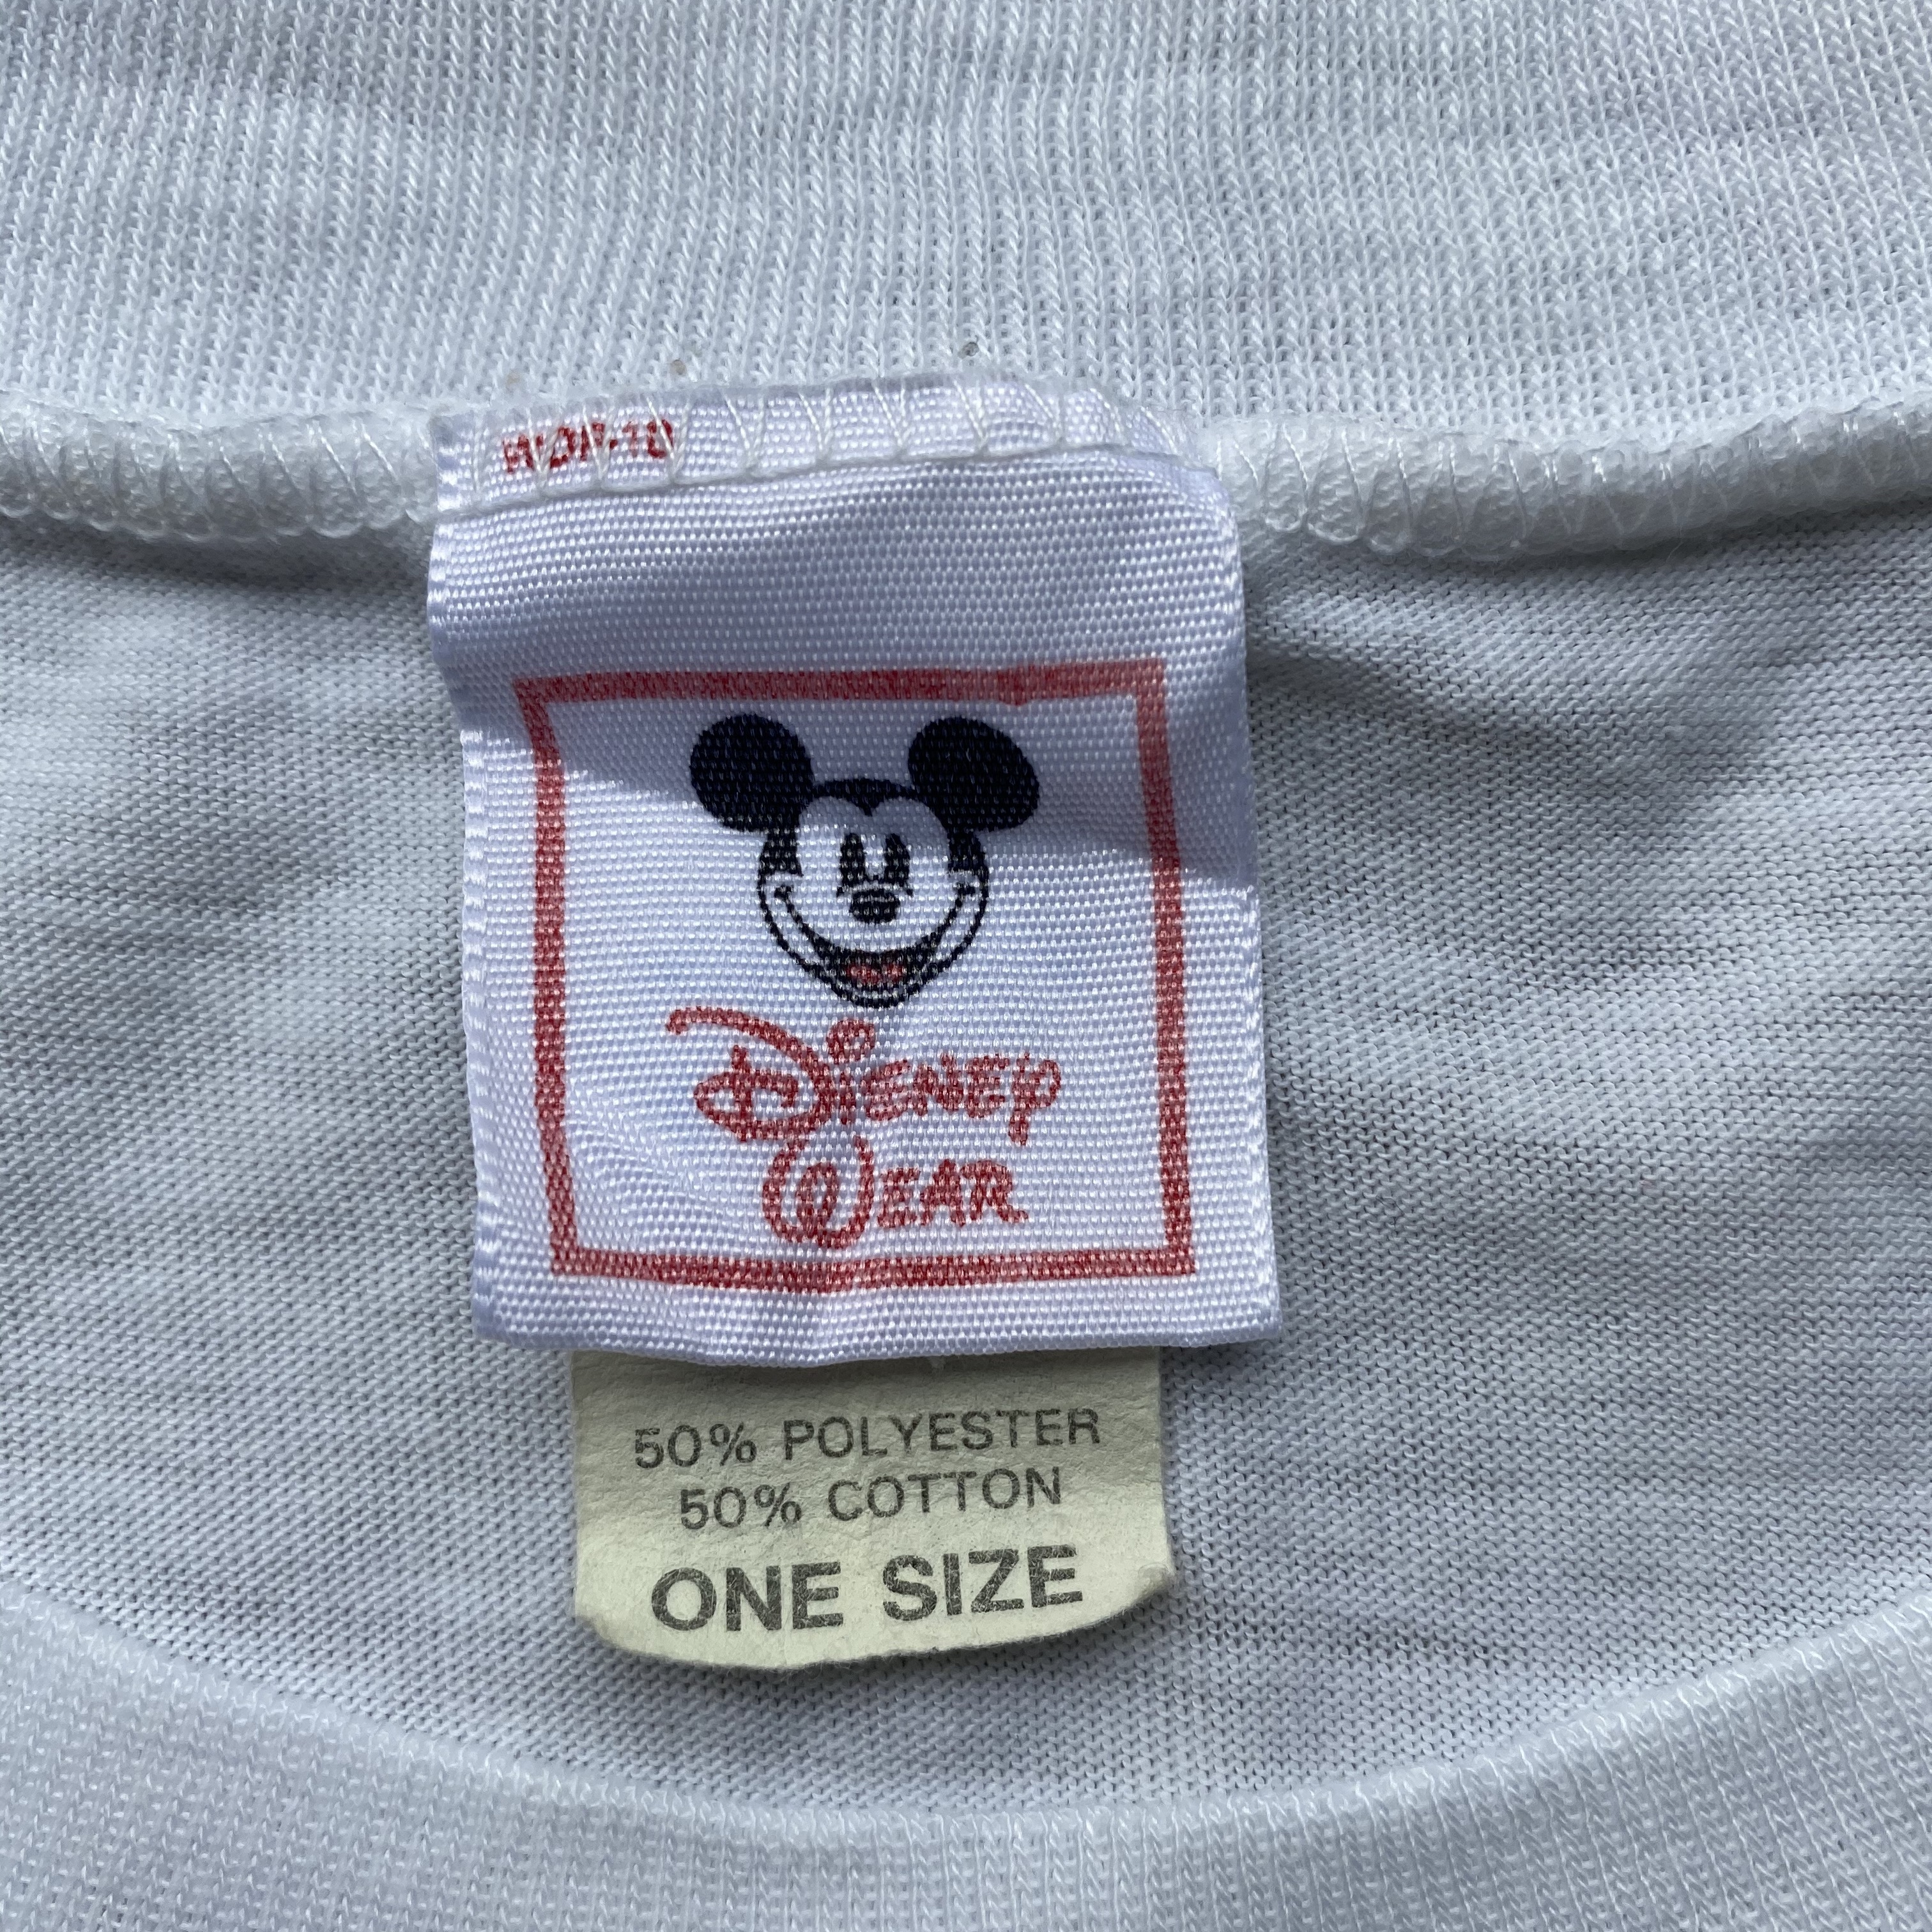 ビッグサイズ 80年代 Disney Wear ディズニー Mickey Mouse ミッキーマウス プリントtシャツ キャラクターtシャツ ワンピース メンズ レディース ワンサイズ 古着 Tシャツ Al Sa Cave 古着屋 公式 古着通販サイト